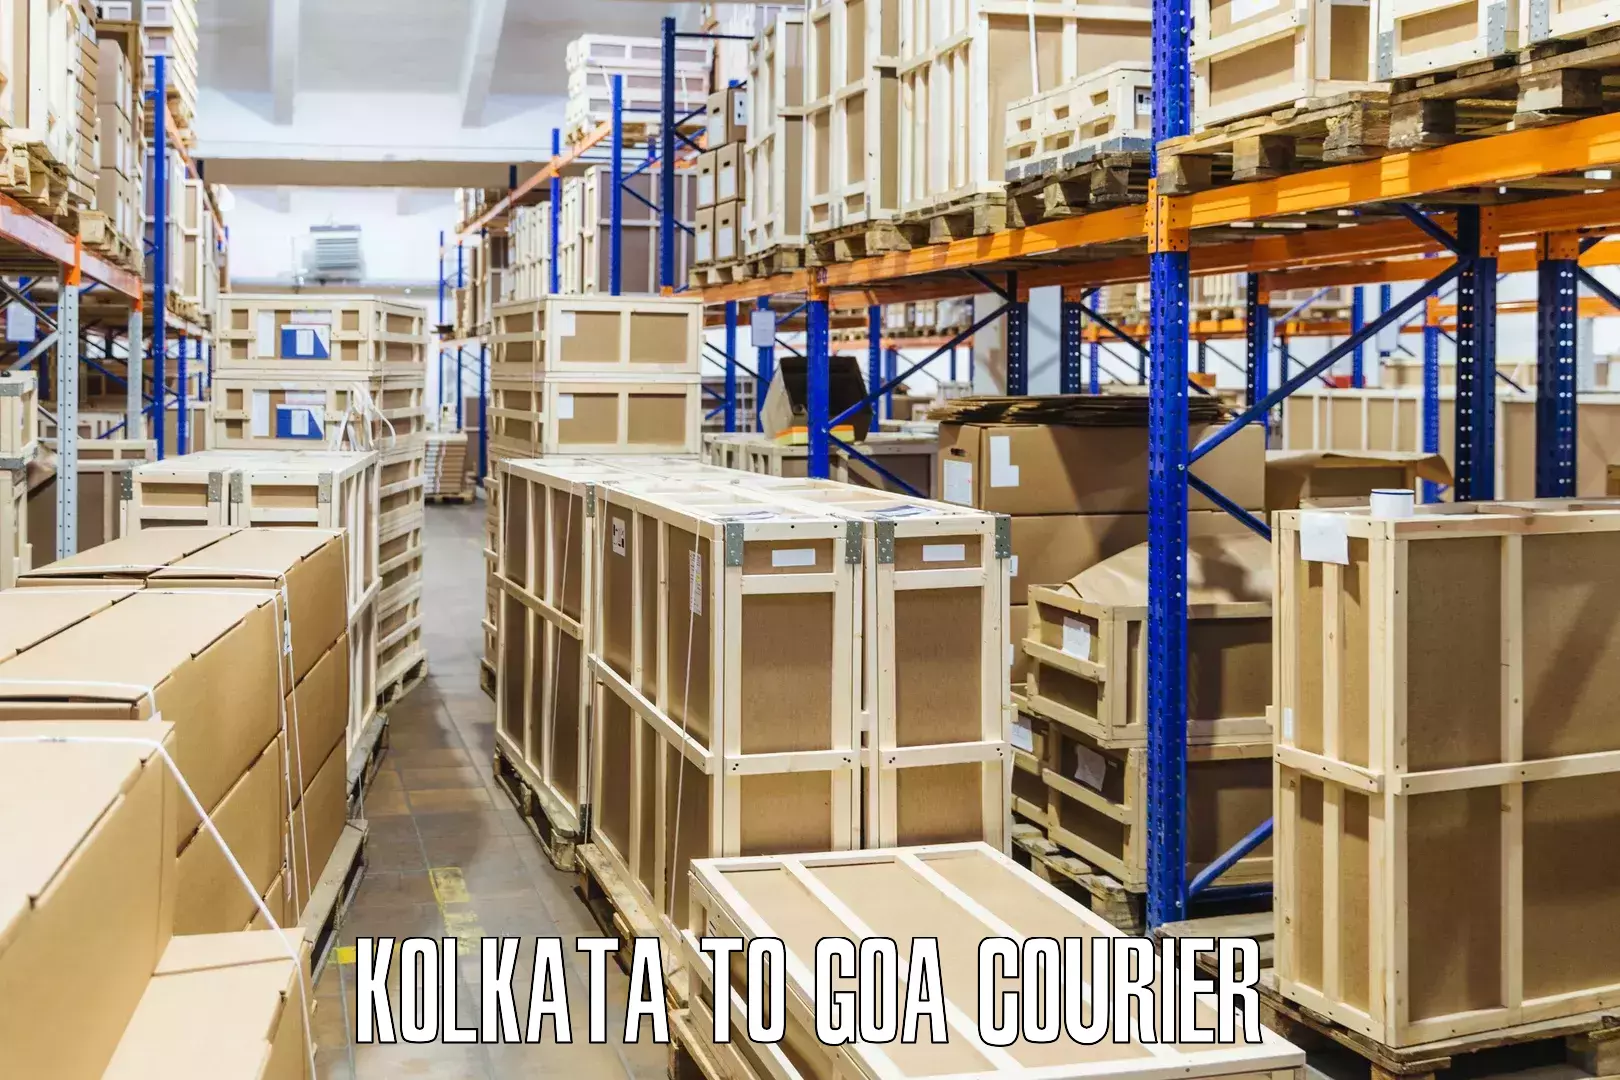 Rapid shipping services Kolkata to Goa